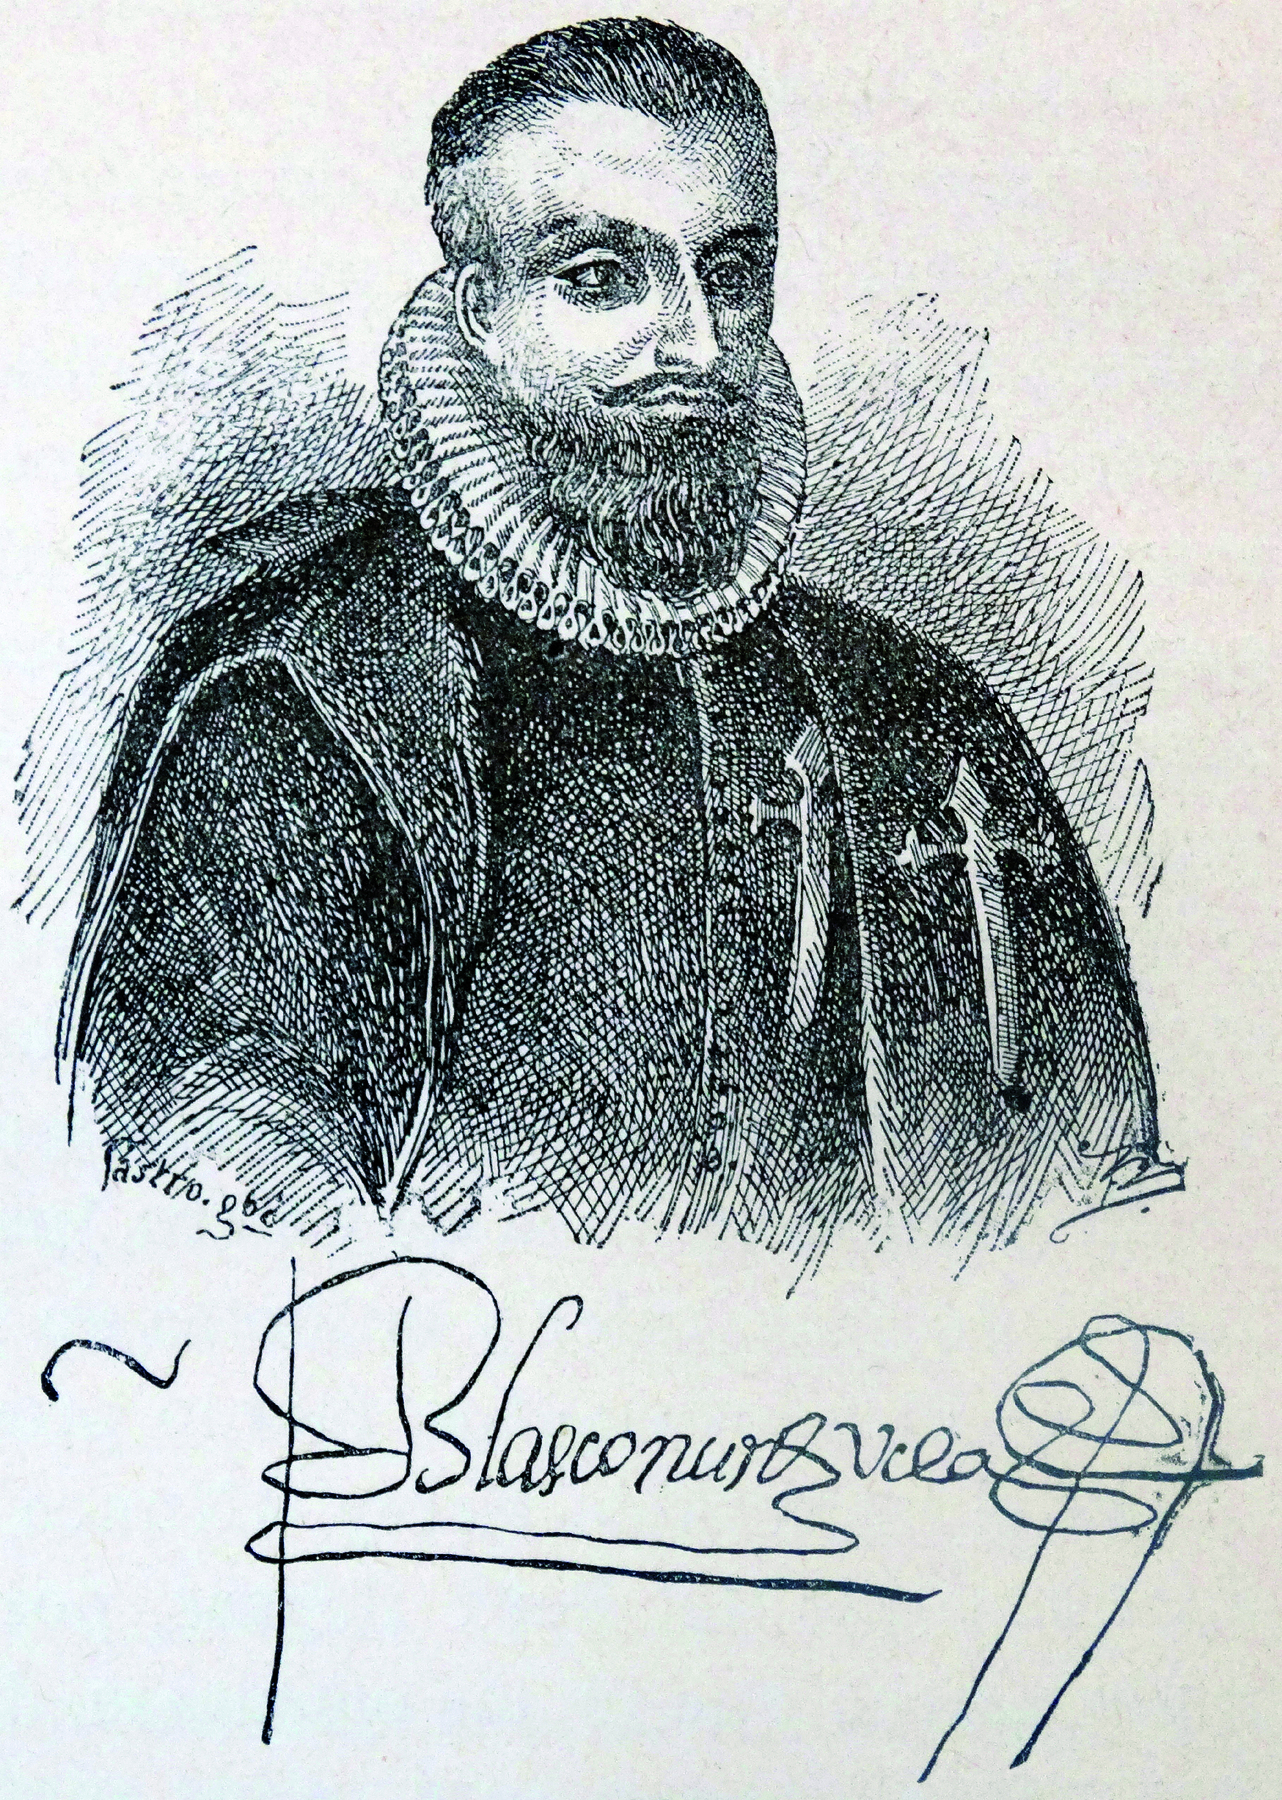 Gravura em preto e branco. Busto de homem com barba usando casaco comprido com rufo (gola alta plissada ao redor do pescoço). Abaixo, sua assinatura.